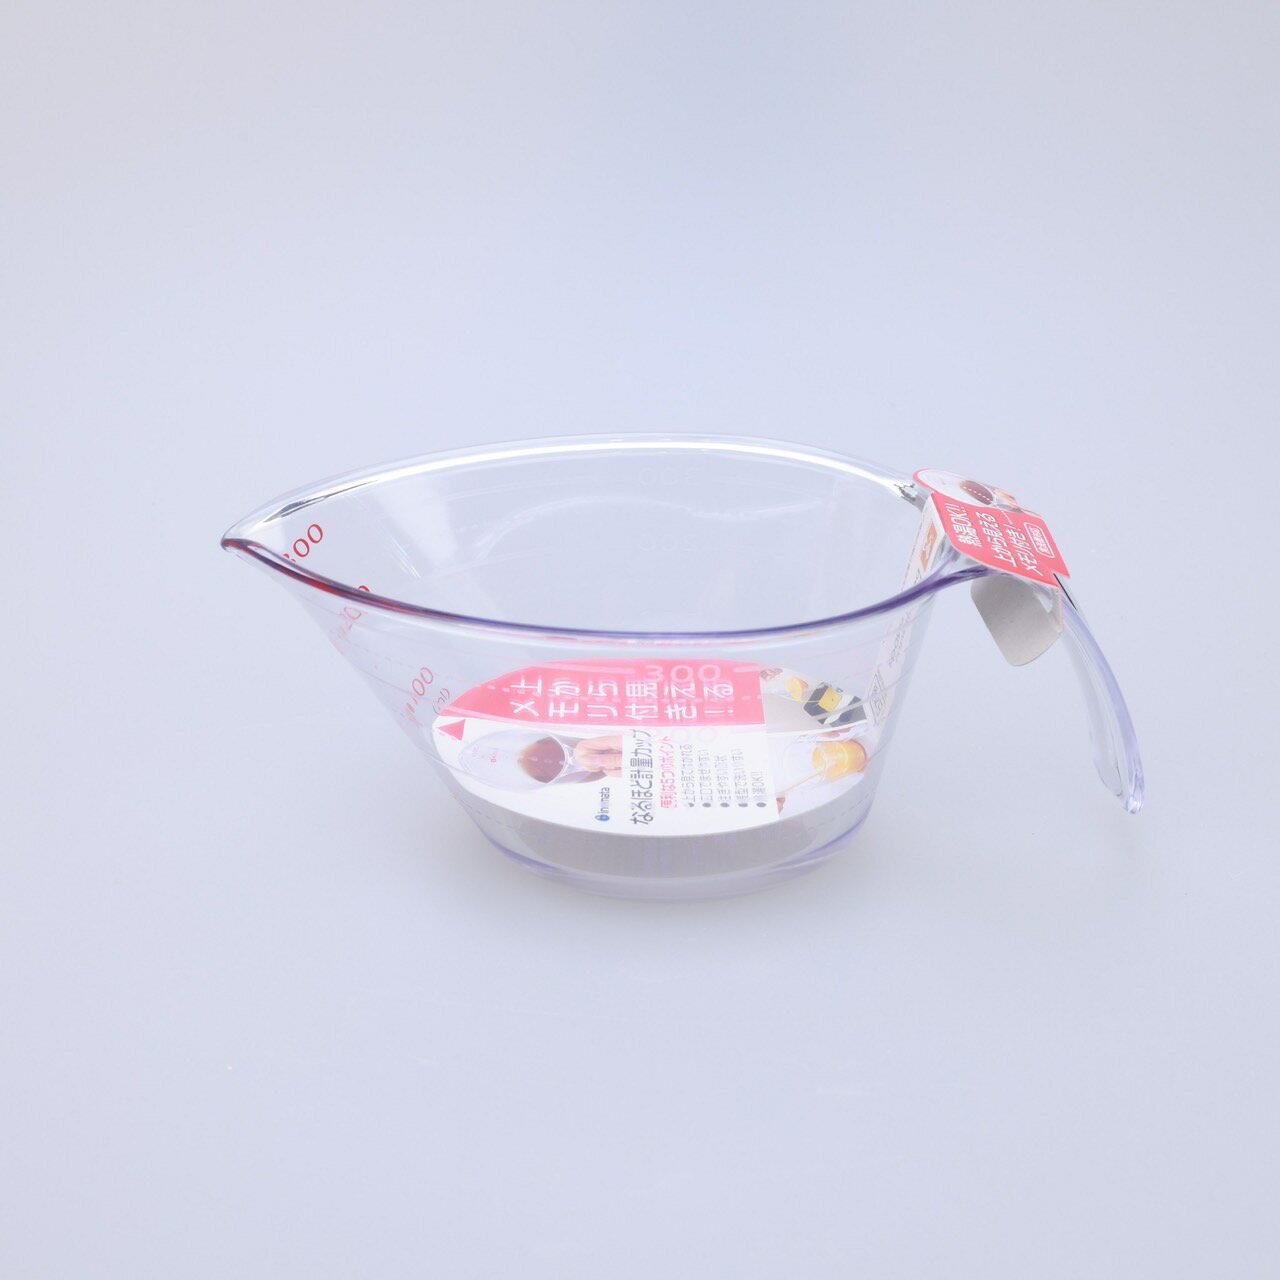 日本 INOMATA 透明耐熱量杯 350ML【附發票現貨】大口徑尖嘴設計 高湯量杯 烘焙量杯